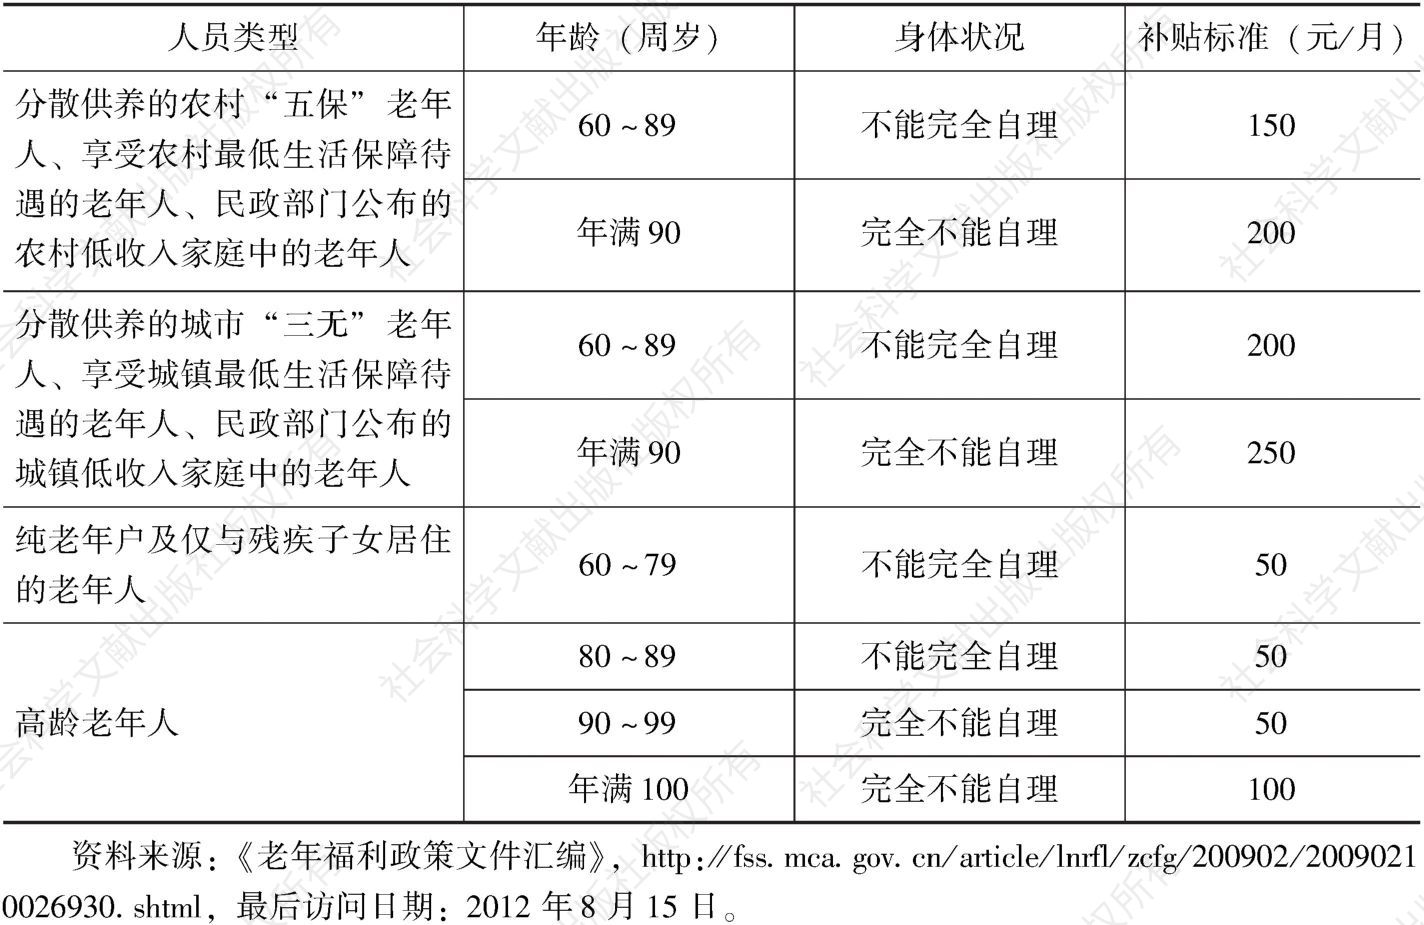 表1-4 北京市特殊老年人养老服务补贴标准（试行）